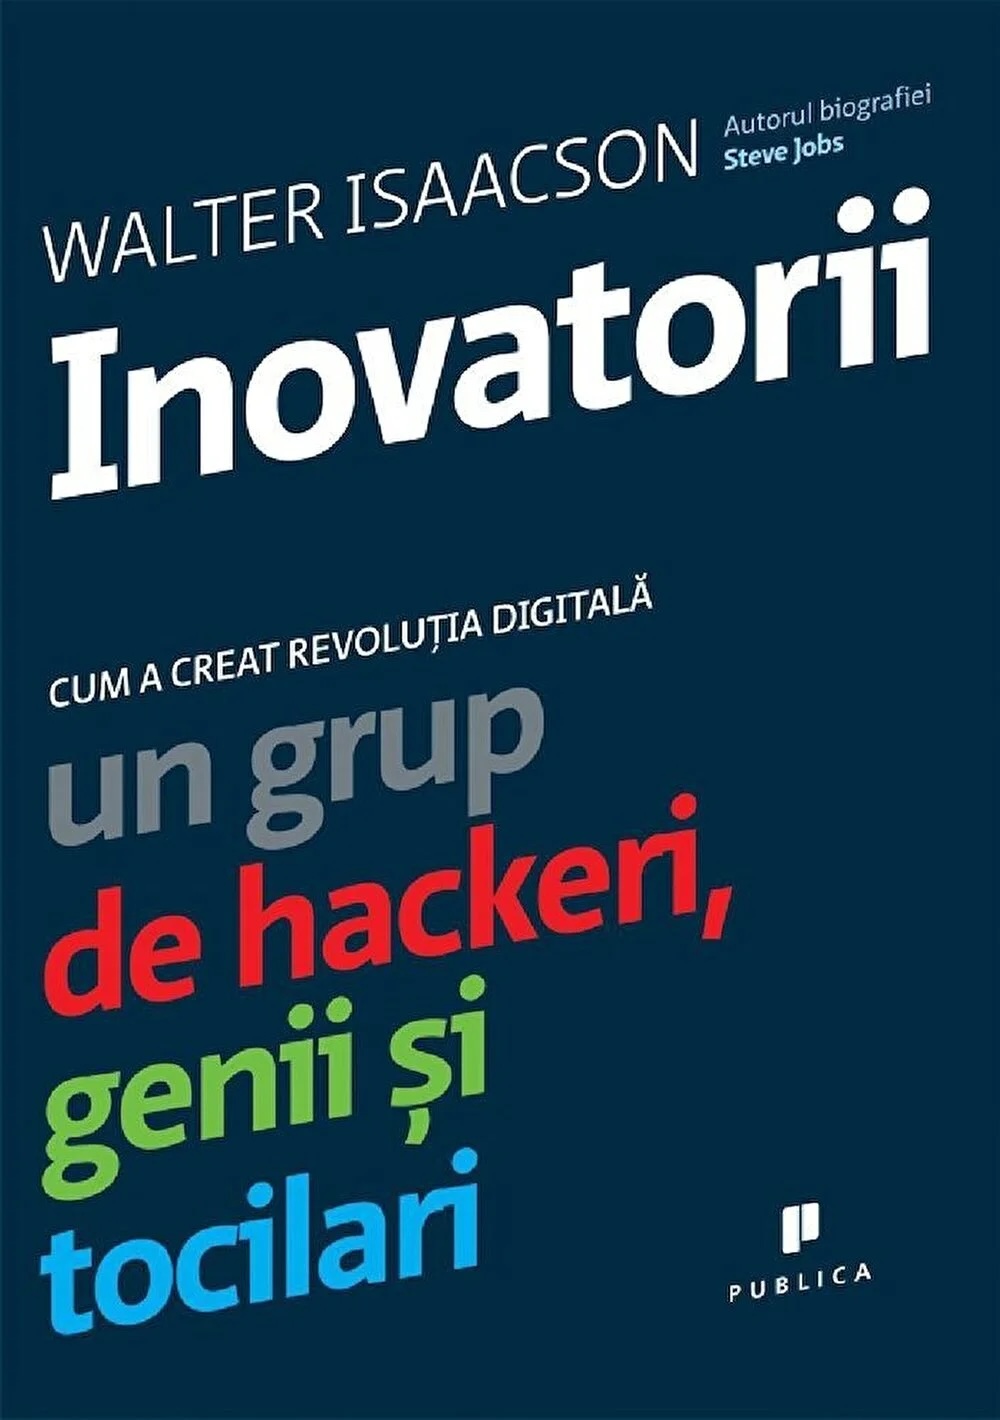 Inovatorii (Walter Isaacson)